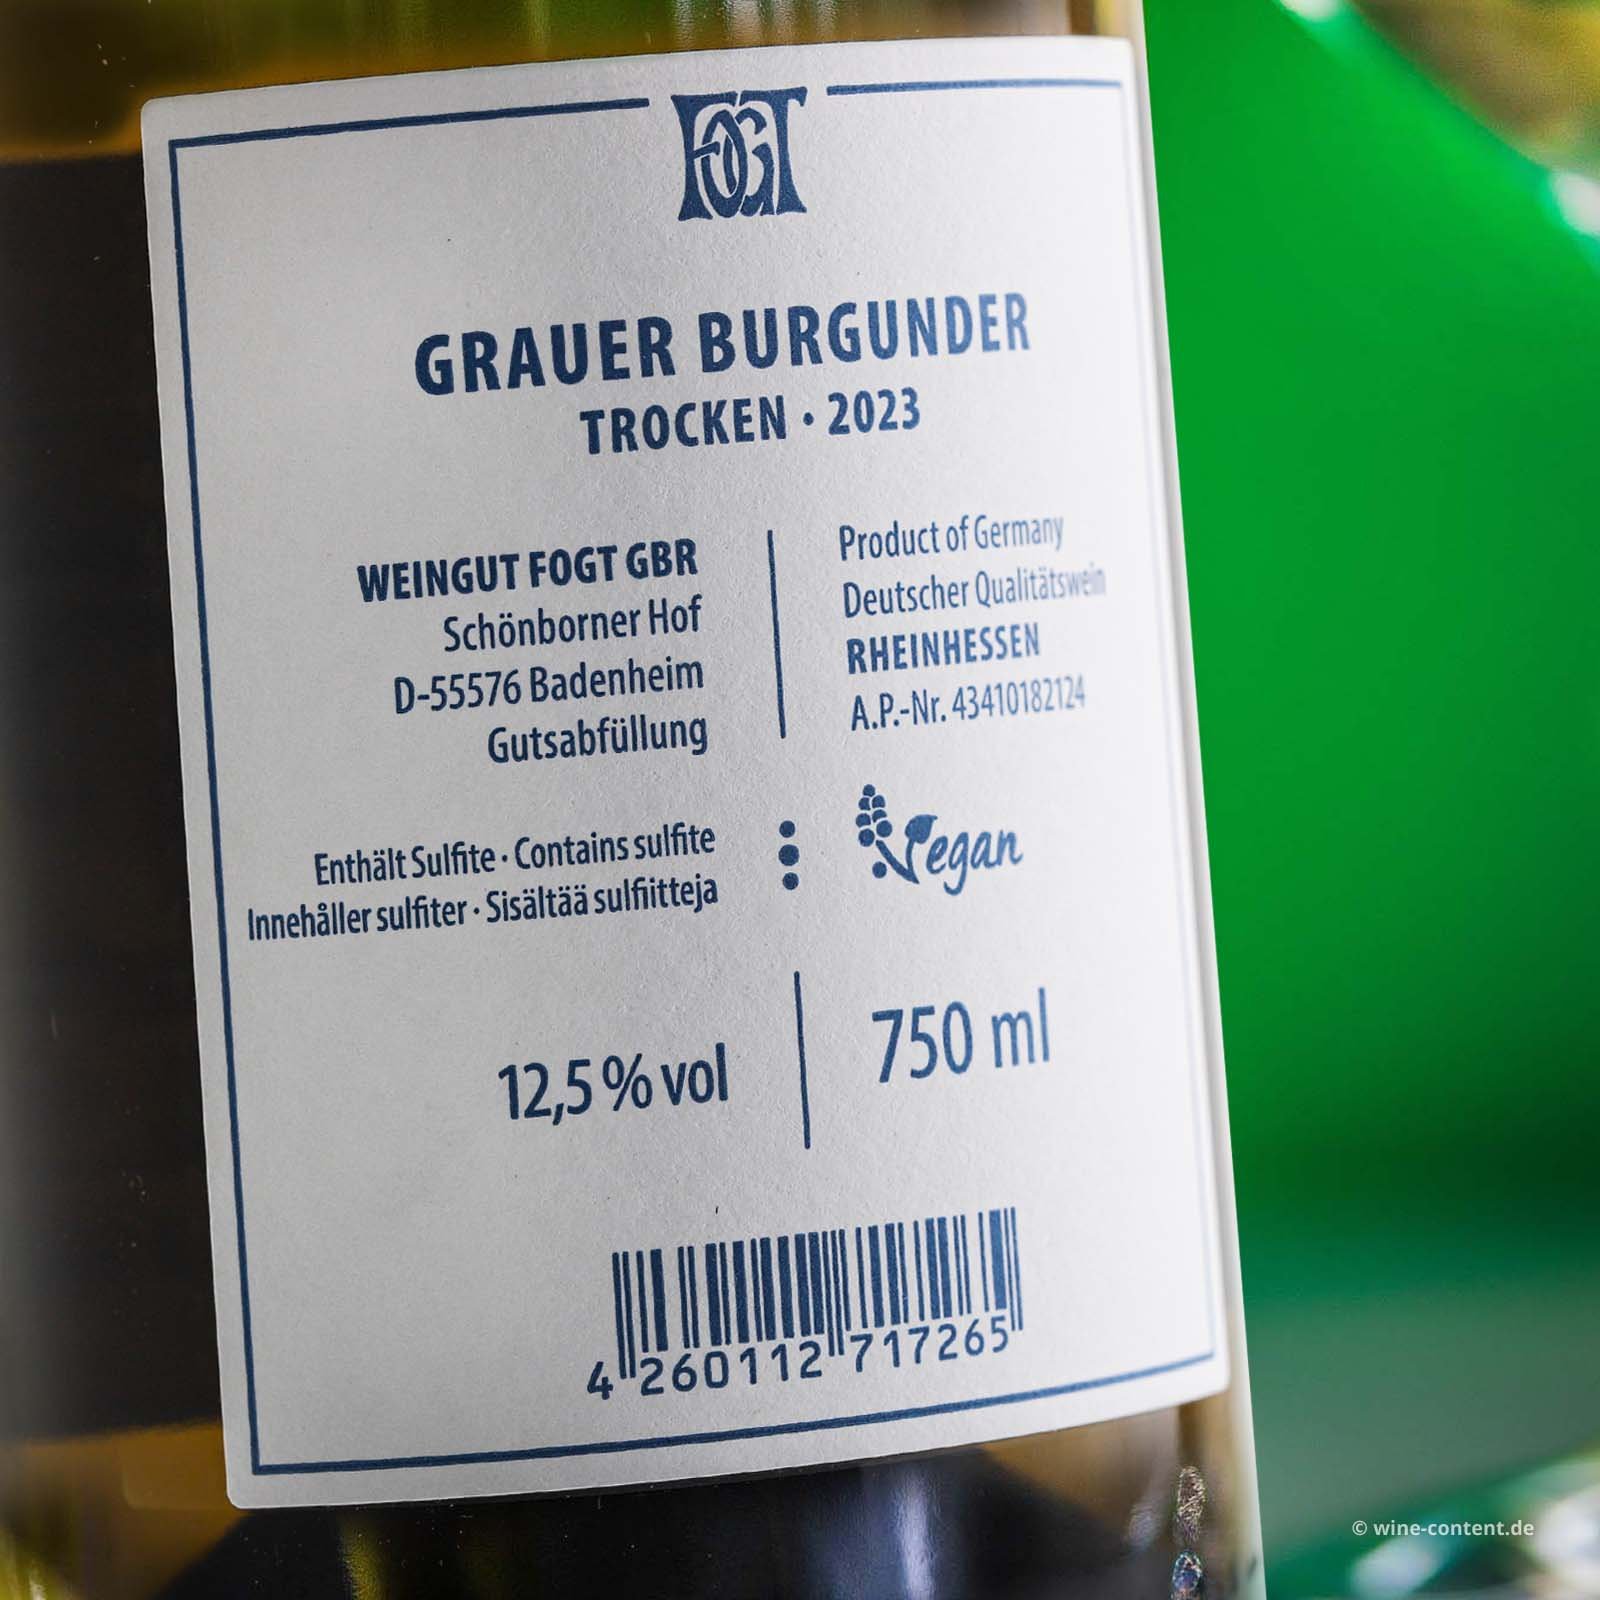 Grauer Burgunder 2023